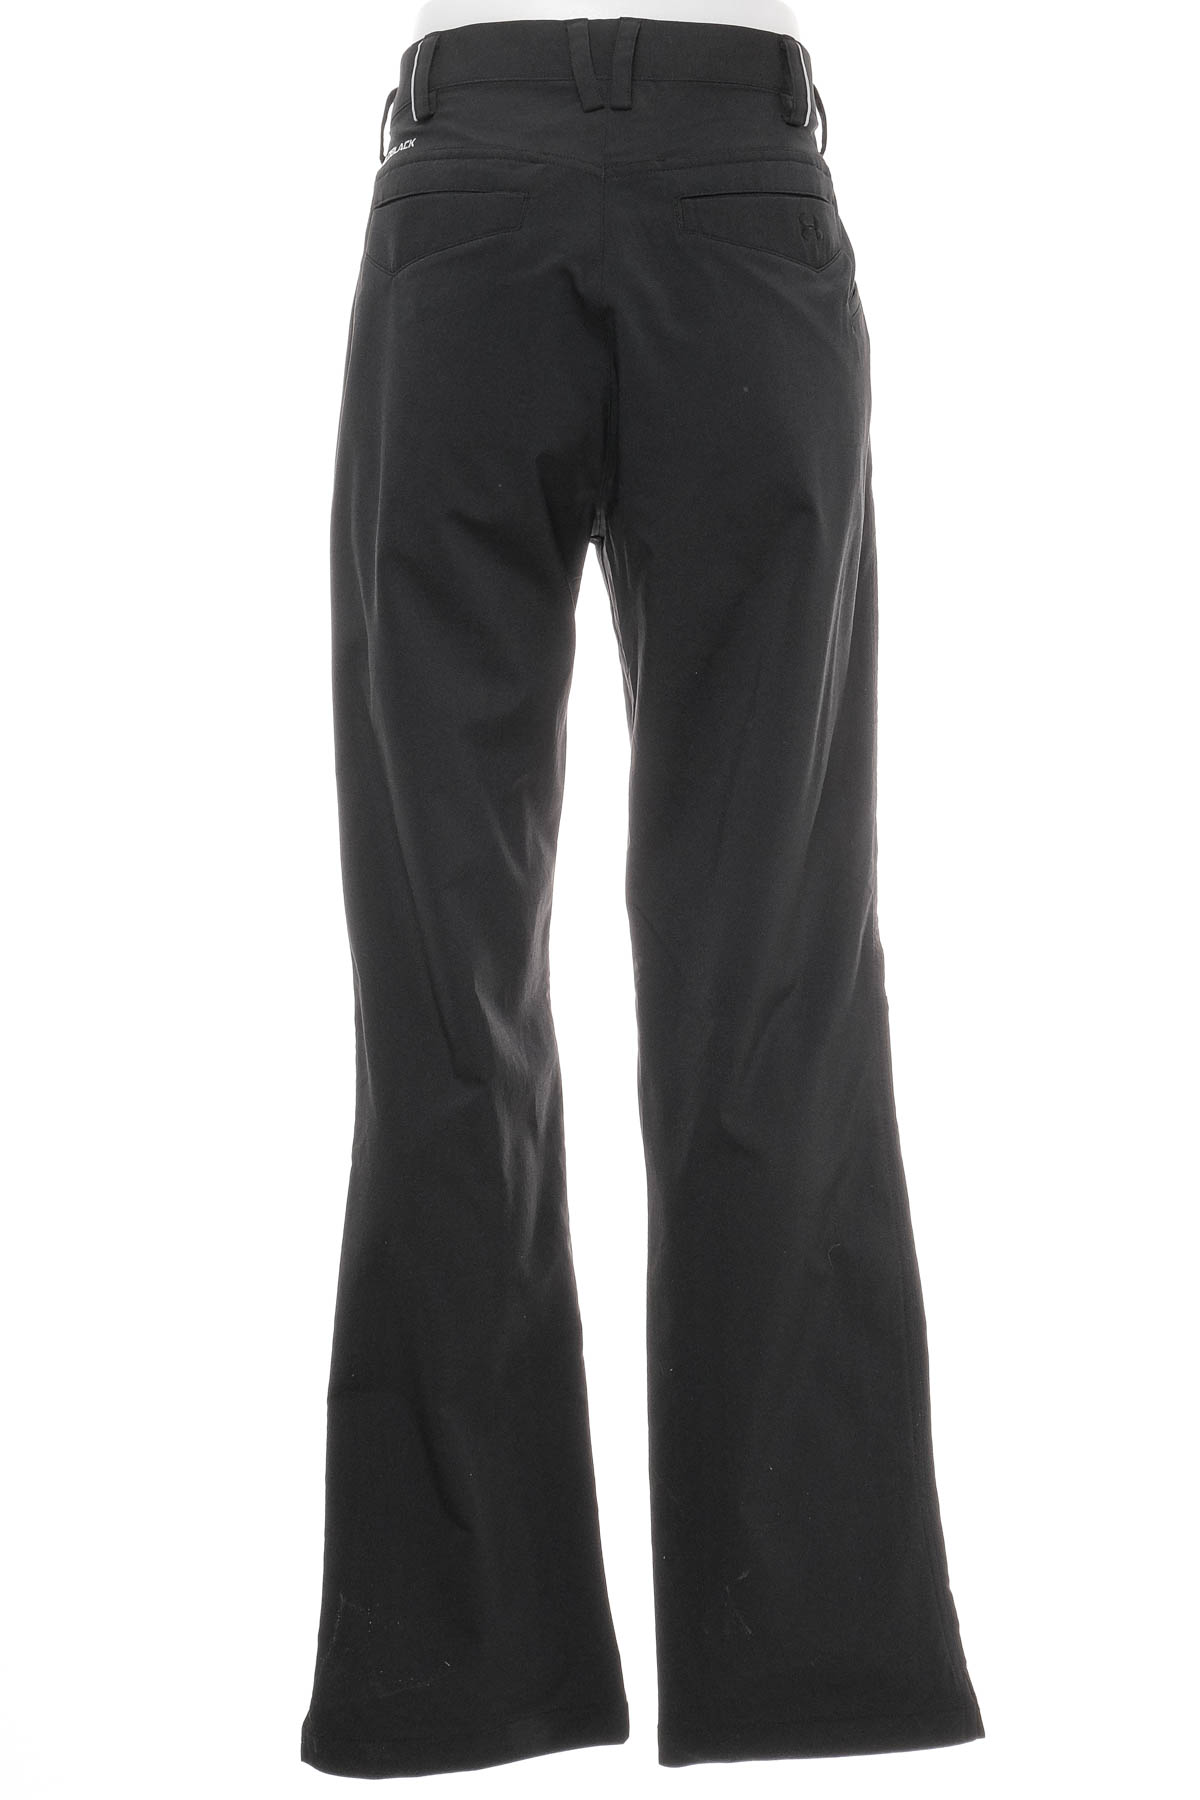 Pantalon pentru bărbați - UNDER ARMOUR - 1